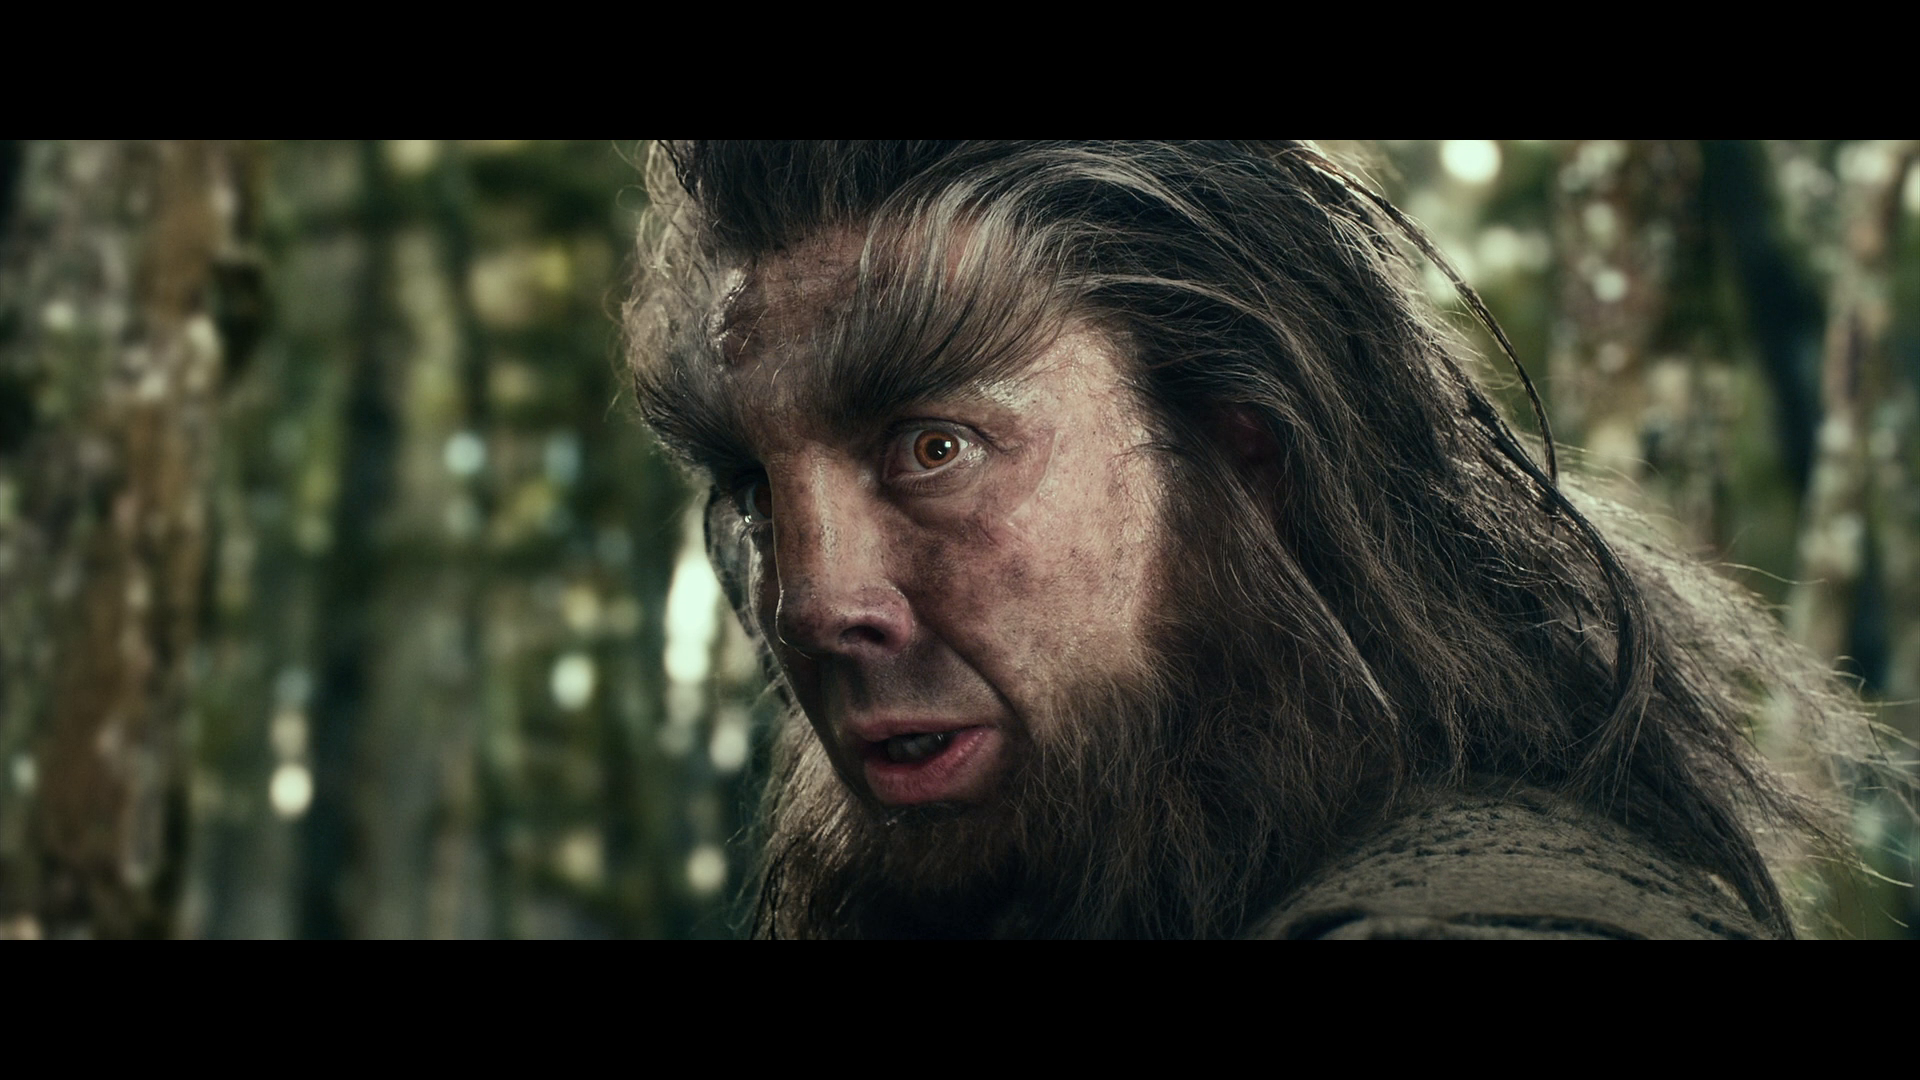 [霍比特人2].The.Hobbit.The.Desolation.of.Smaug.2013.EXTENDED.BluRay.1080p.AVC.DTS-HD.MA.7.1-Tay   41.01G- u2 n) A4 b( T-9.png